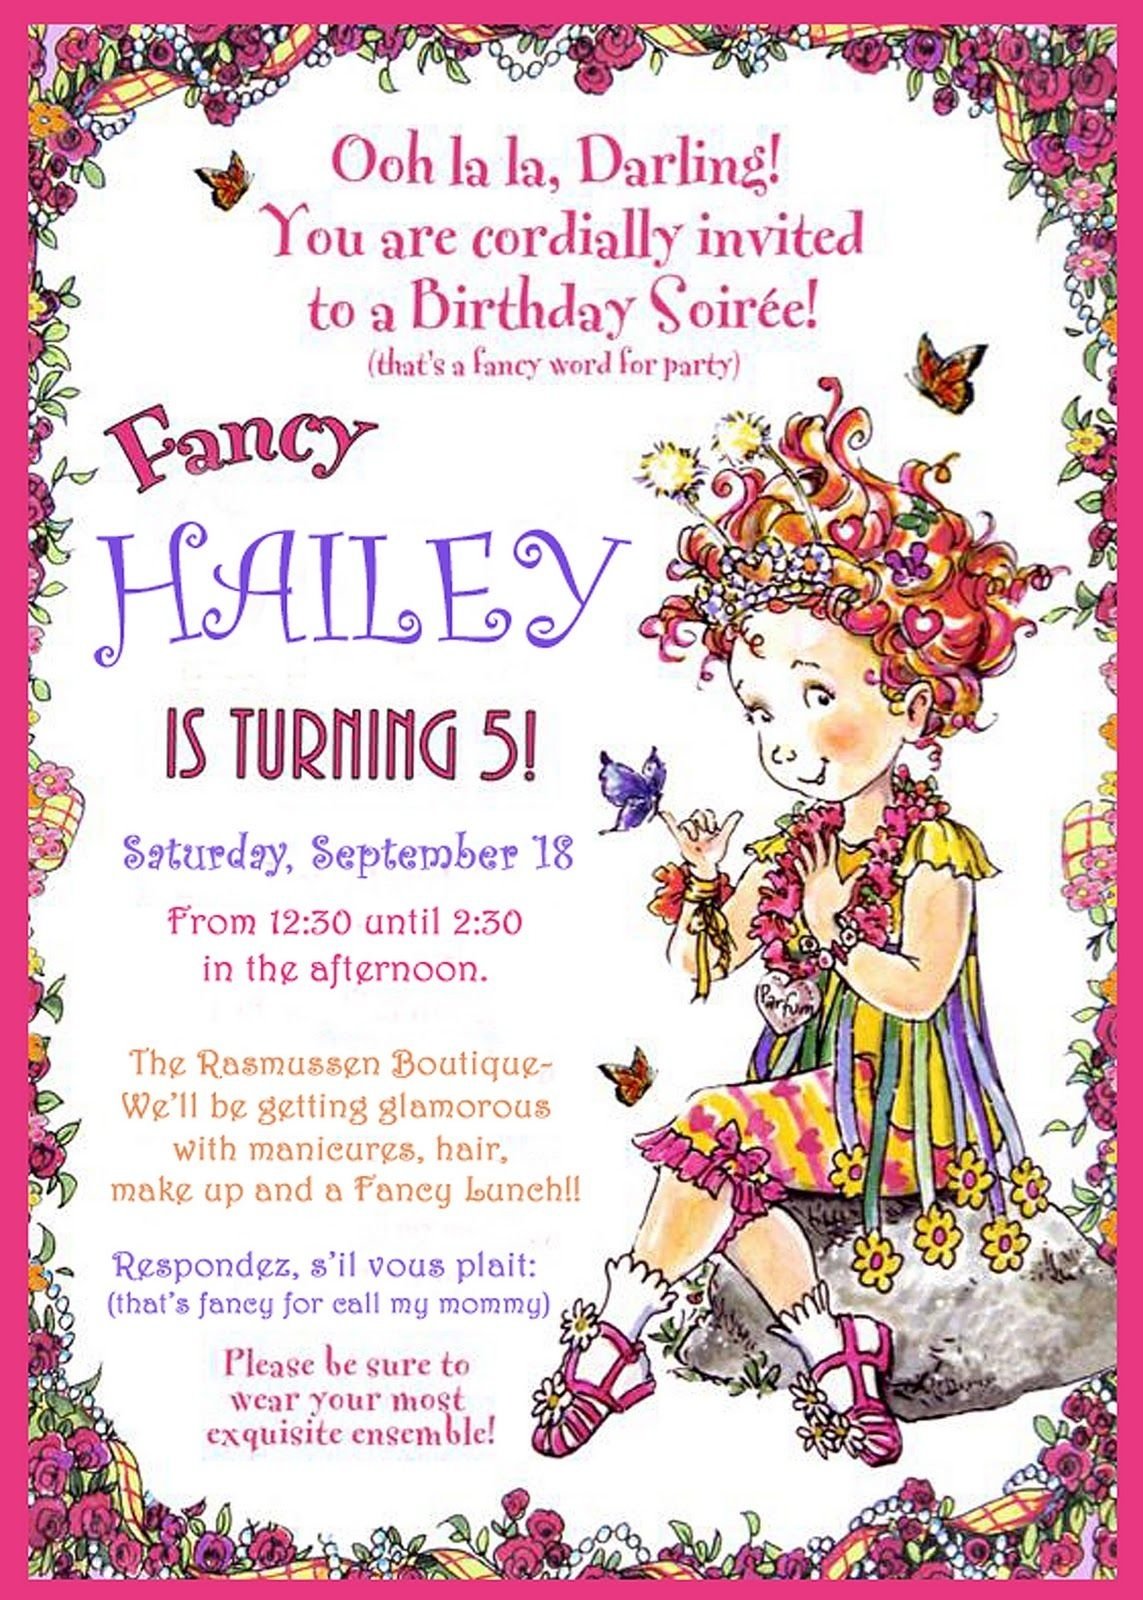 10 Wonderful Fancy Nancy Birthday Party Ideas fancy nancy party ideas party ideas pinterest fancy nancy 1 2022